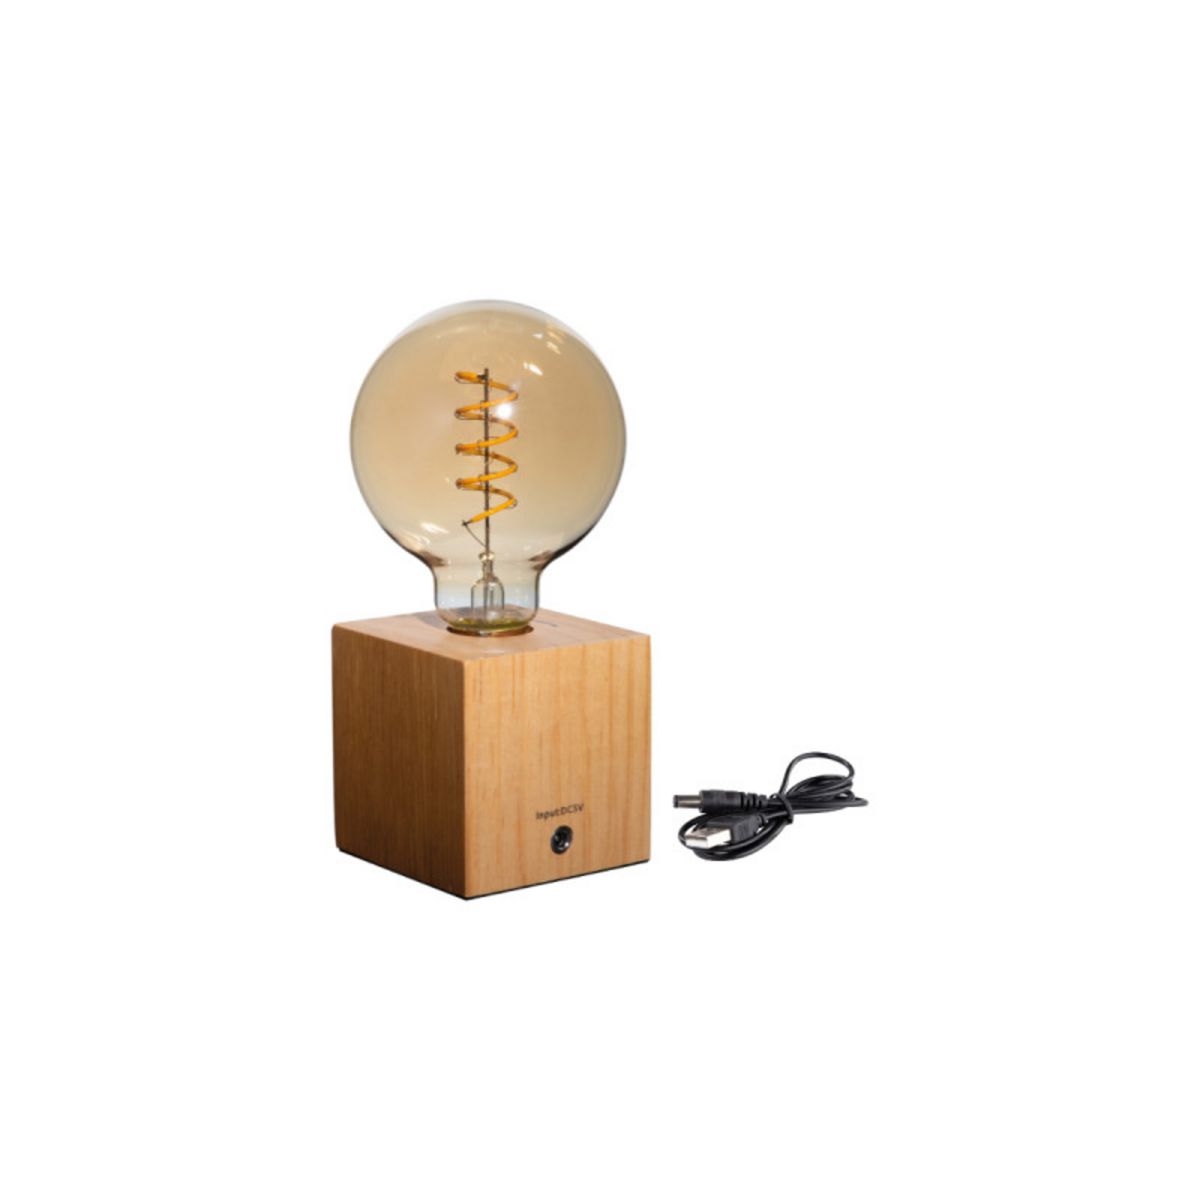  Lampe LED sur cube en bois à poser XXCELL - 0,5 W - 30 lumens - 2700 K - G95